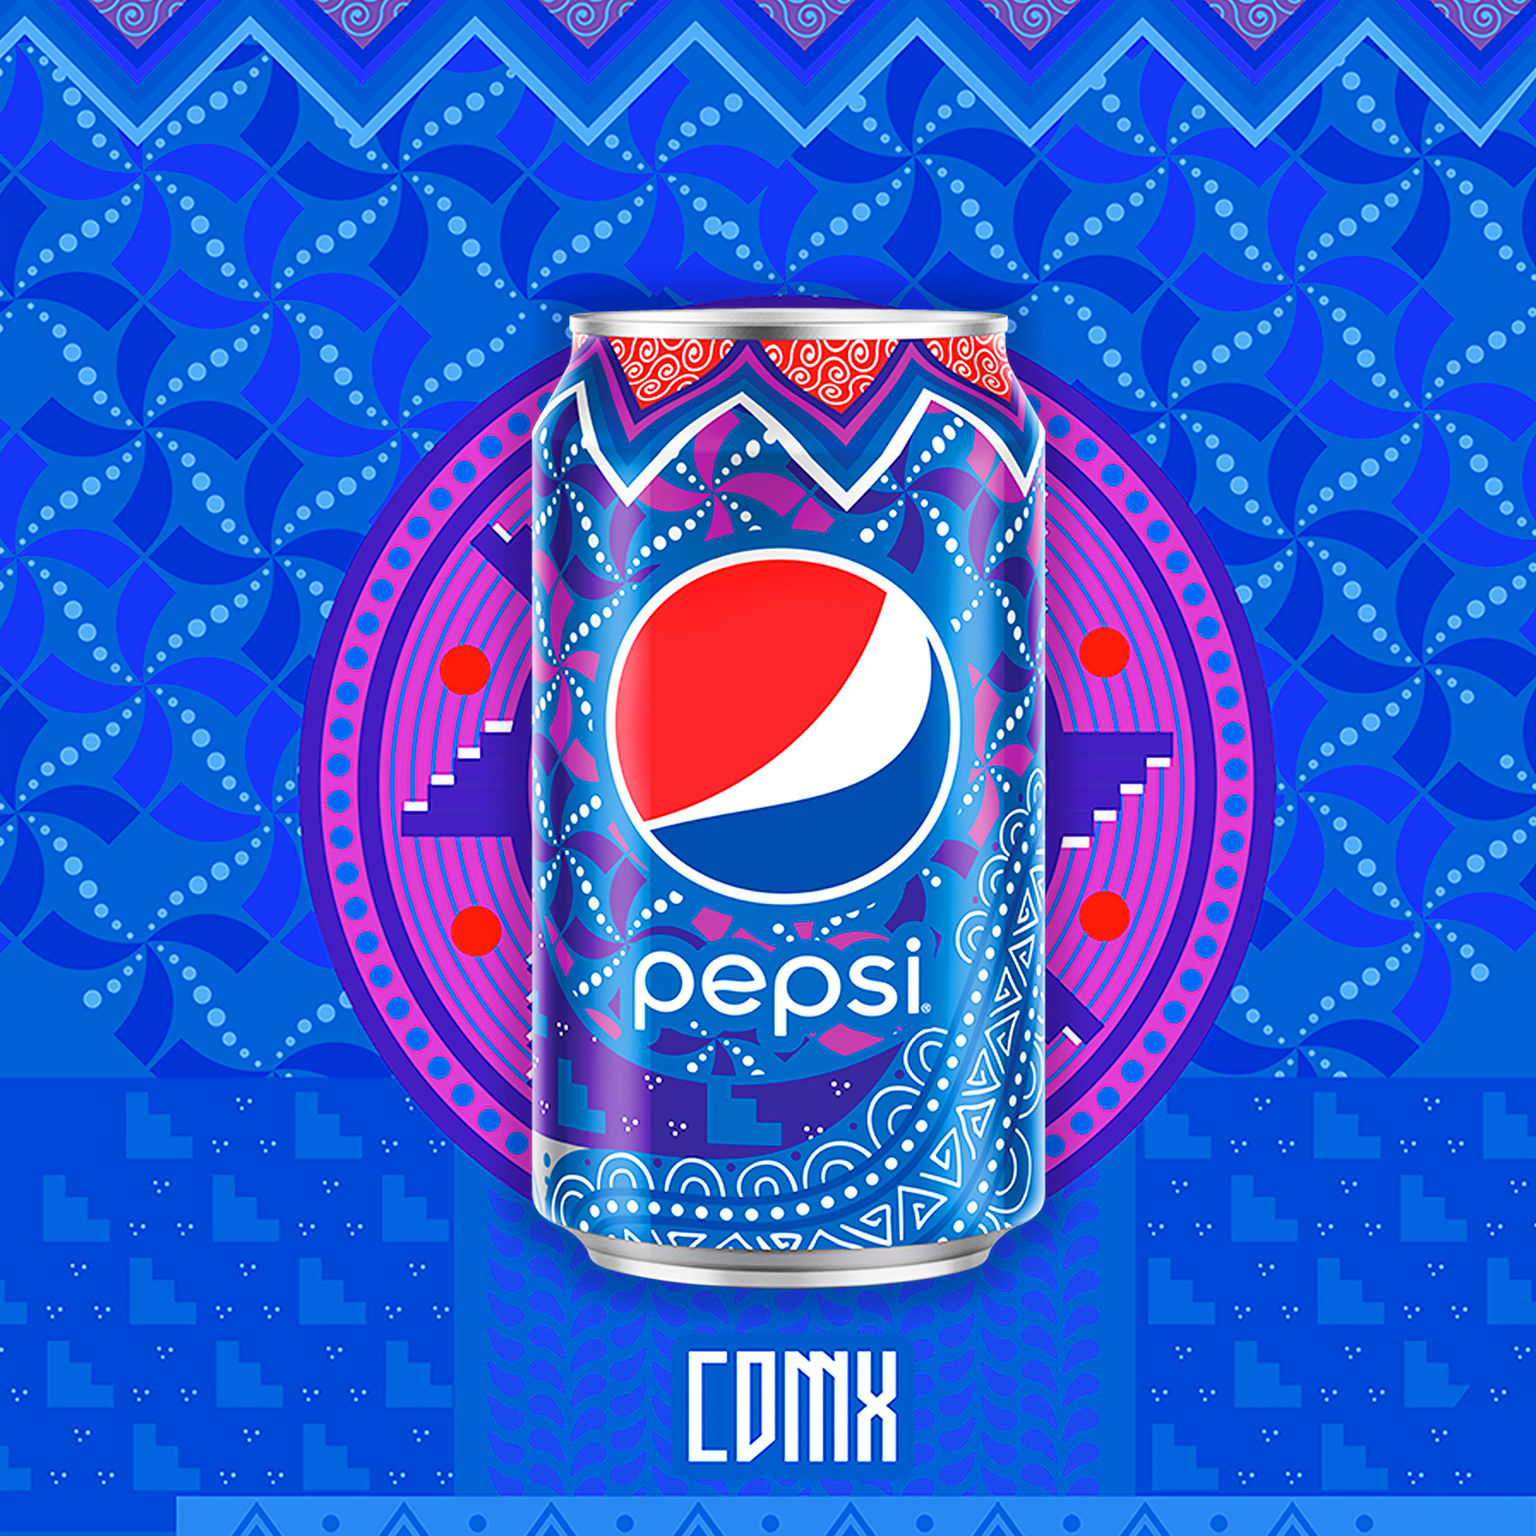 Pepsi Culture Can LTO - Mexico